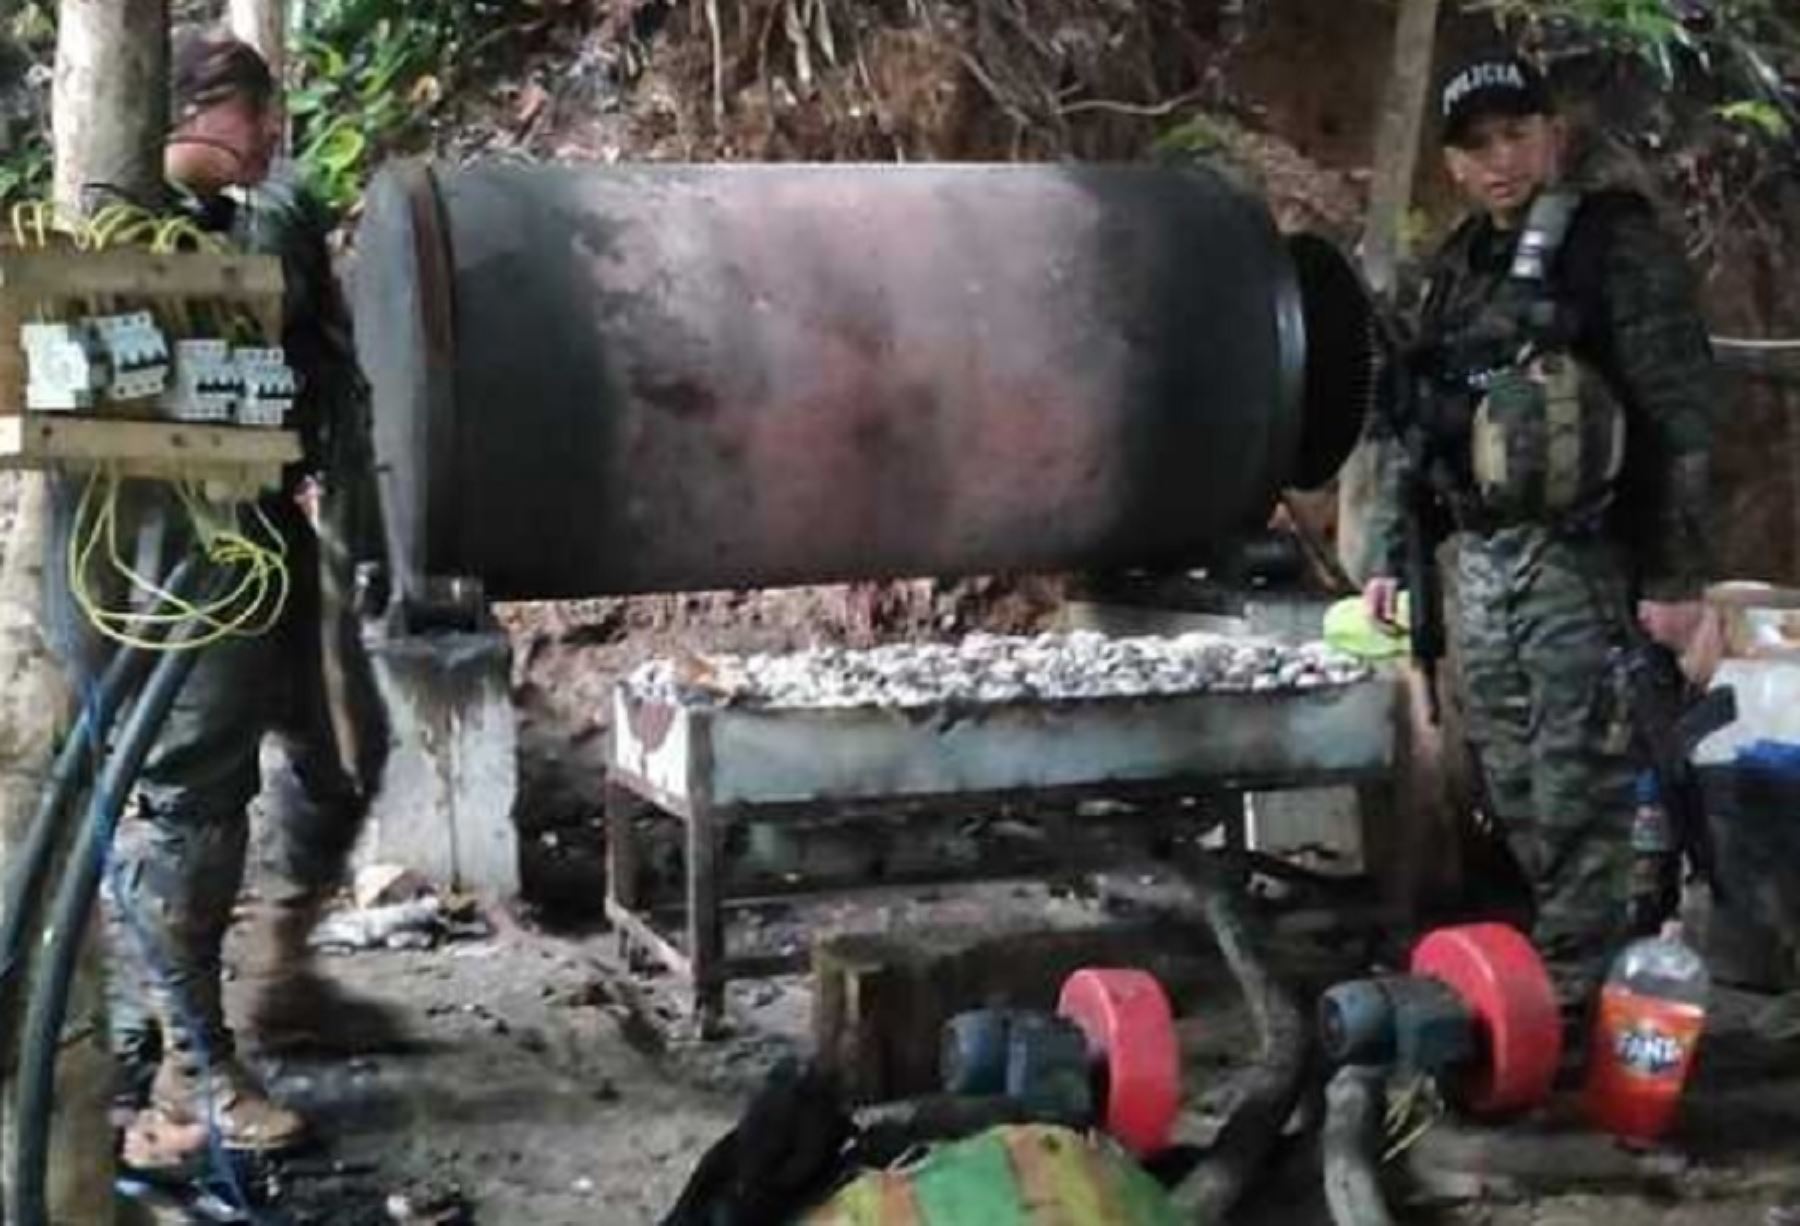 Cuatro laboratorios destinados a la elaboración de droga fueron incinerados por miembros de la Policía Nacional del Peú, como resultado de un exitoso operativo efectuados en las regiones de Cusco y Huánuco.